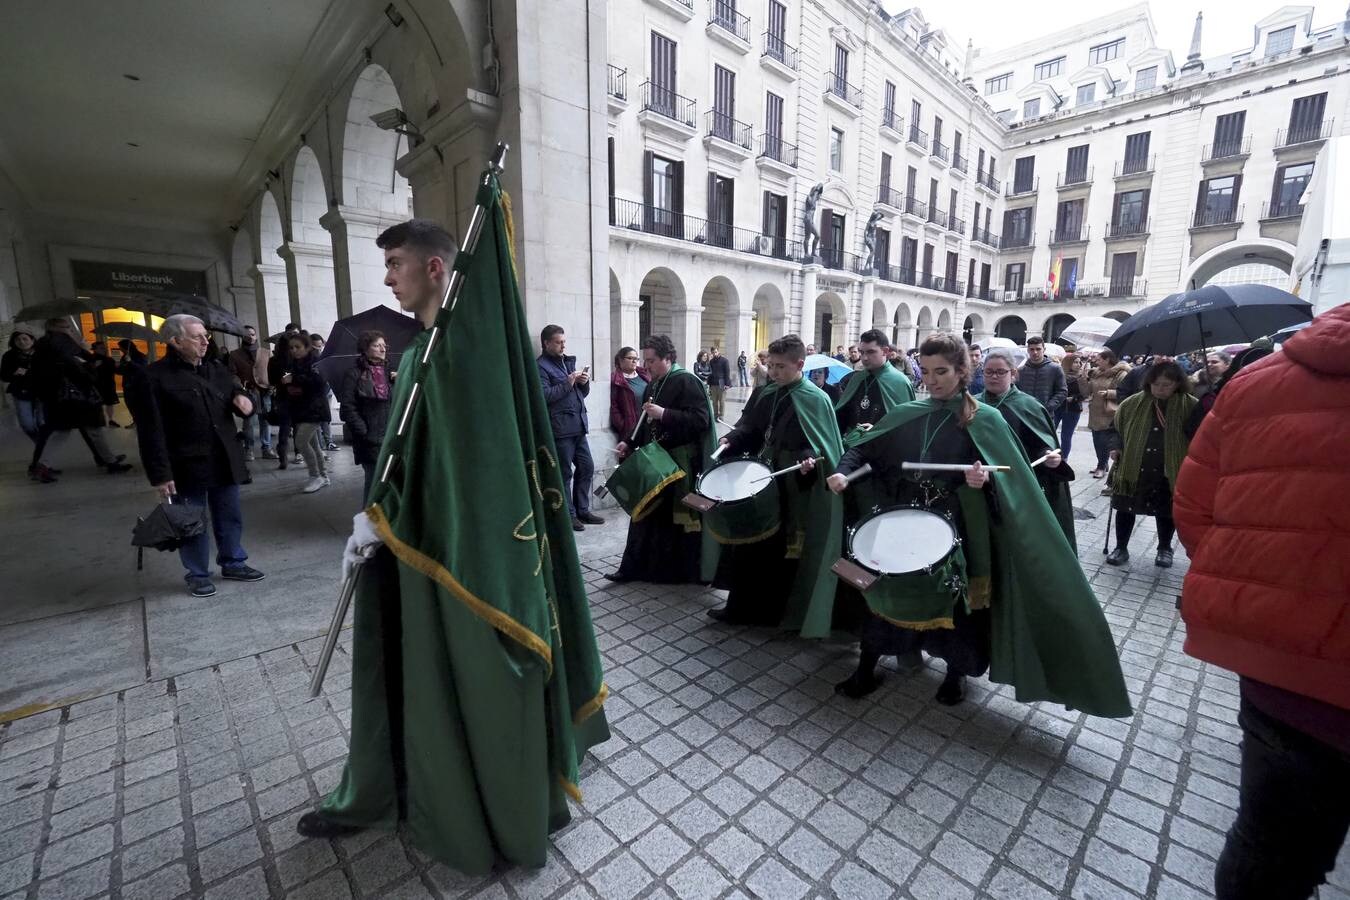 Ante la amenaza de lluvia, la cofradía suspendió la procesión, pero se realizaron actos en la carpa, con su banda de música y los nazarenos